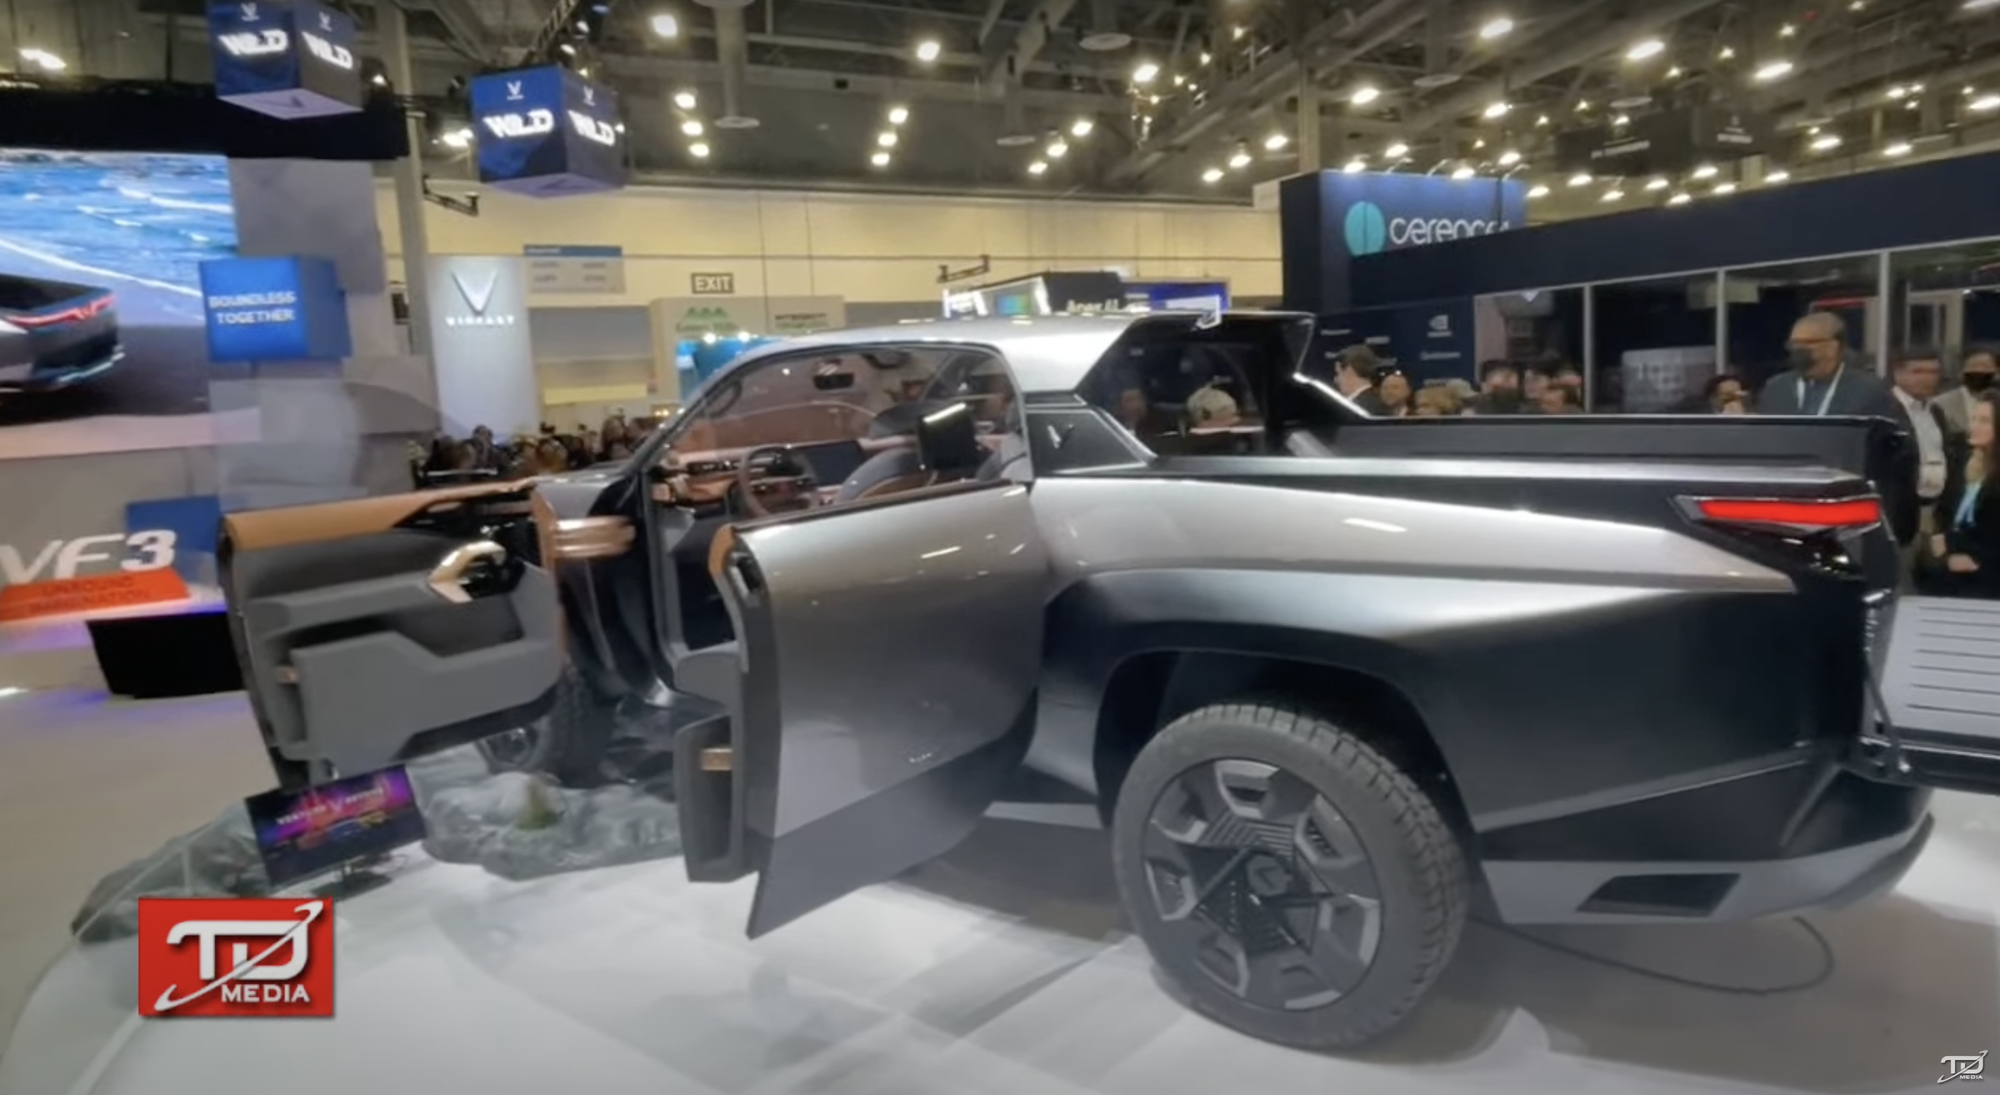 Bán tải VinFast ra mắt với thiết kế như xe viễn tưởng: Cửa mở ngược như Rolls-Royce, trần kính cực lớn - Ảnh 2.